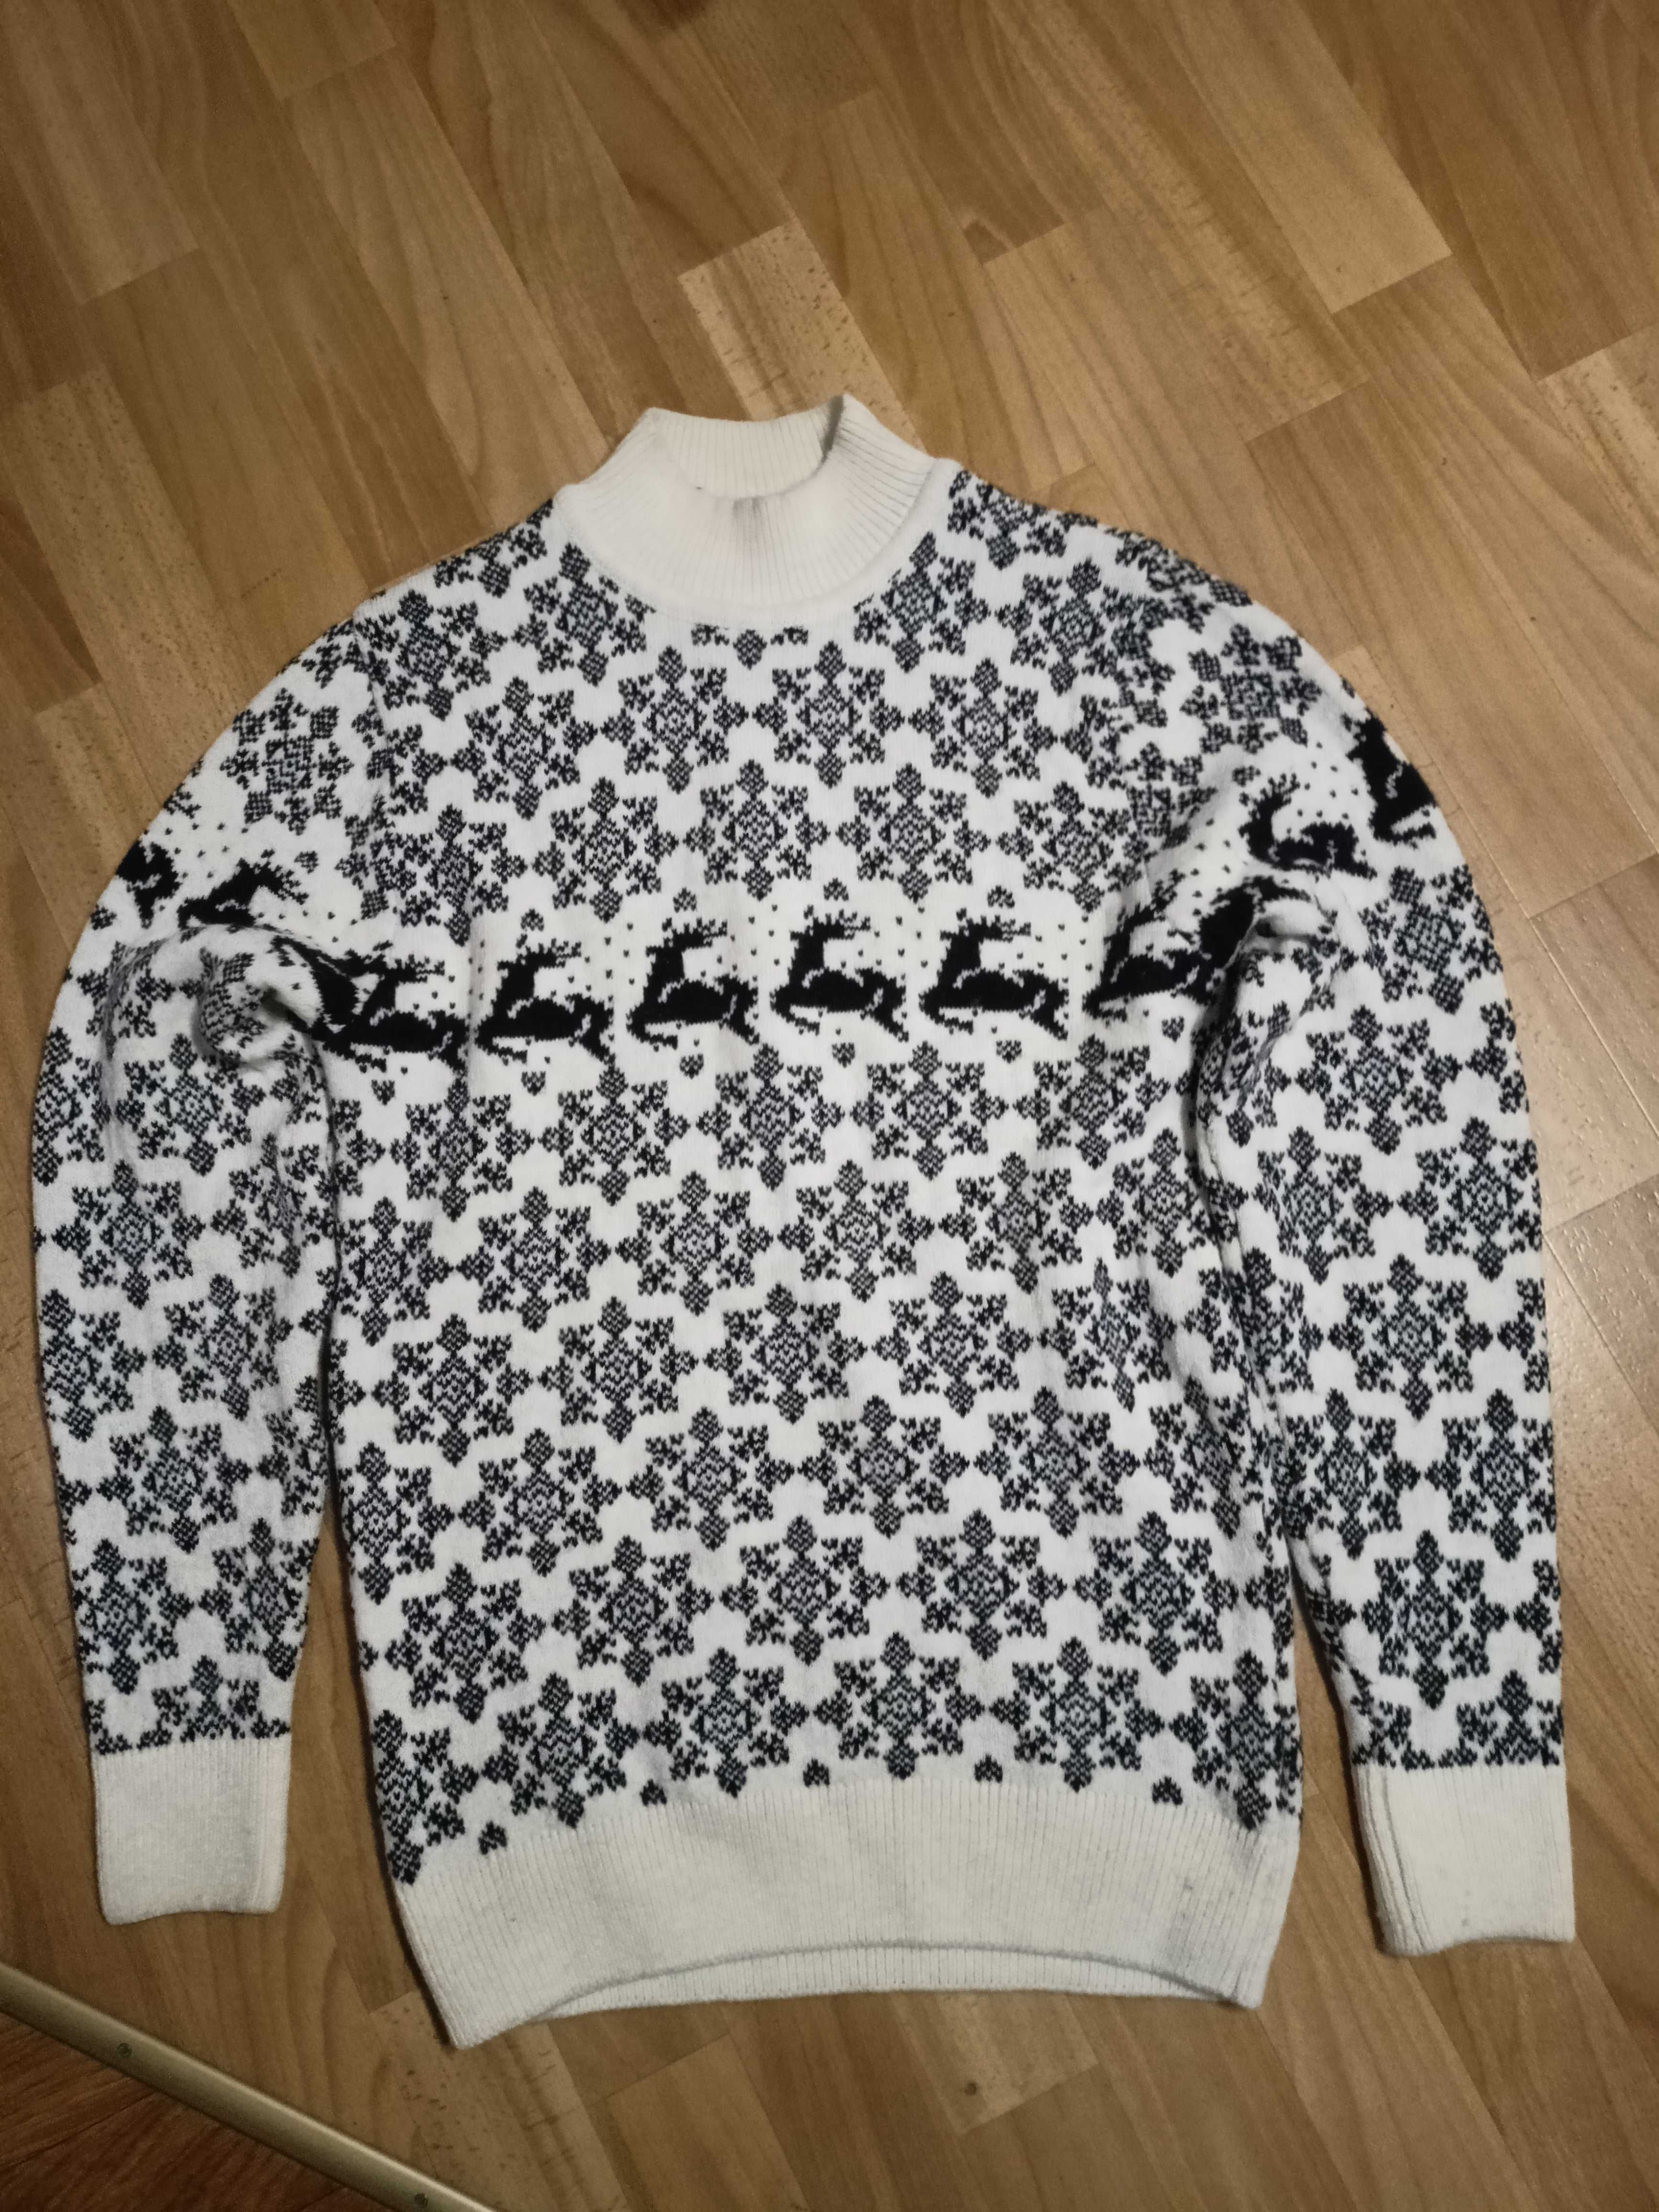 Новорічний светр з оленями